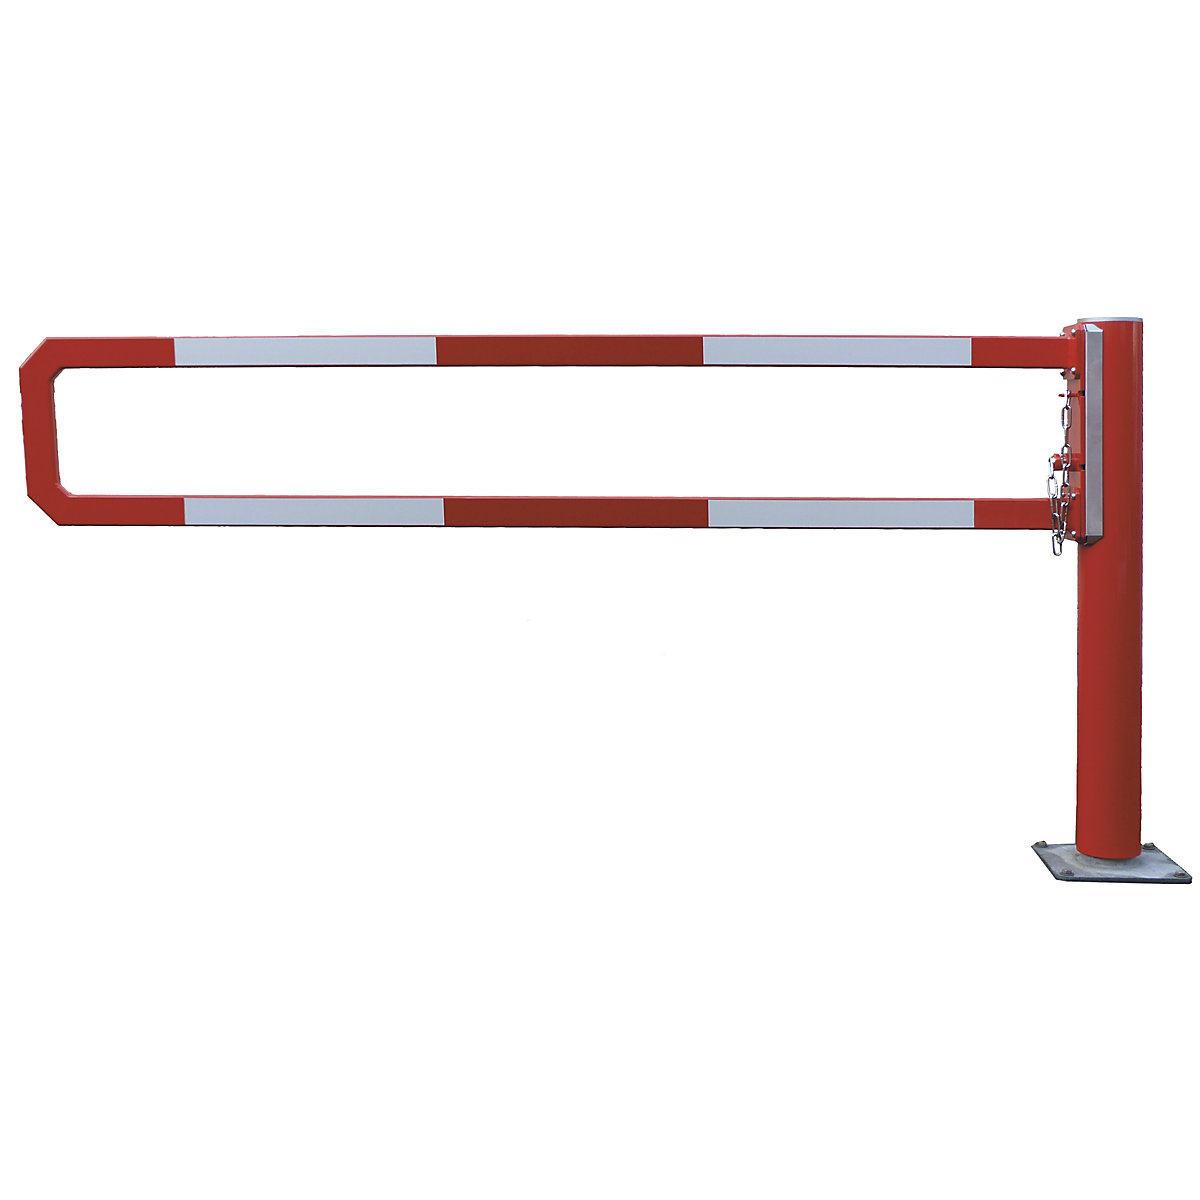 Okretna cestovna rampa – Mannus, svijetla širina 2 m, vruće pocinčano, dodatno praškasto lakirano u crvenoj boji-3